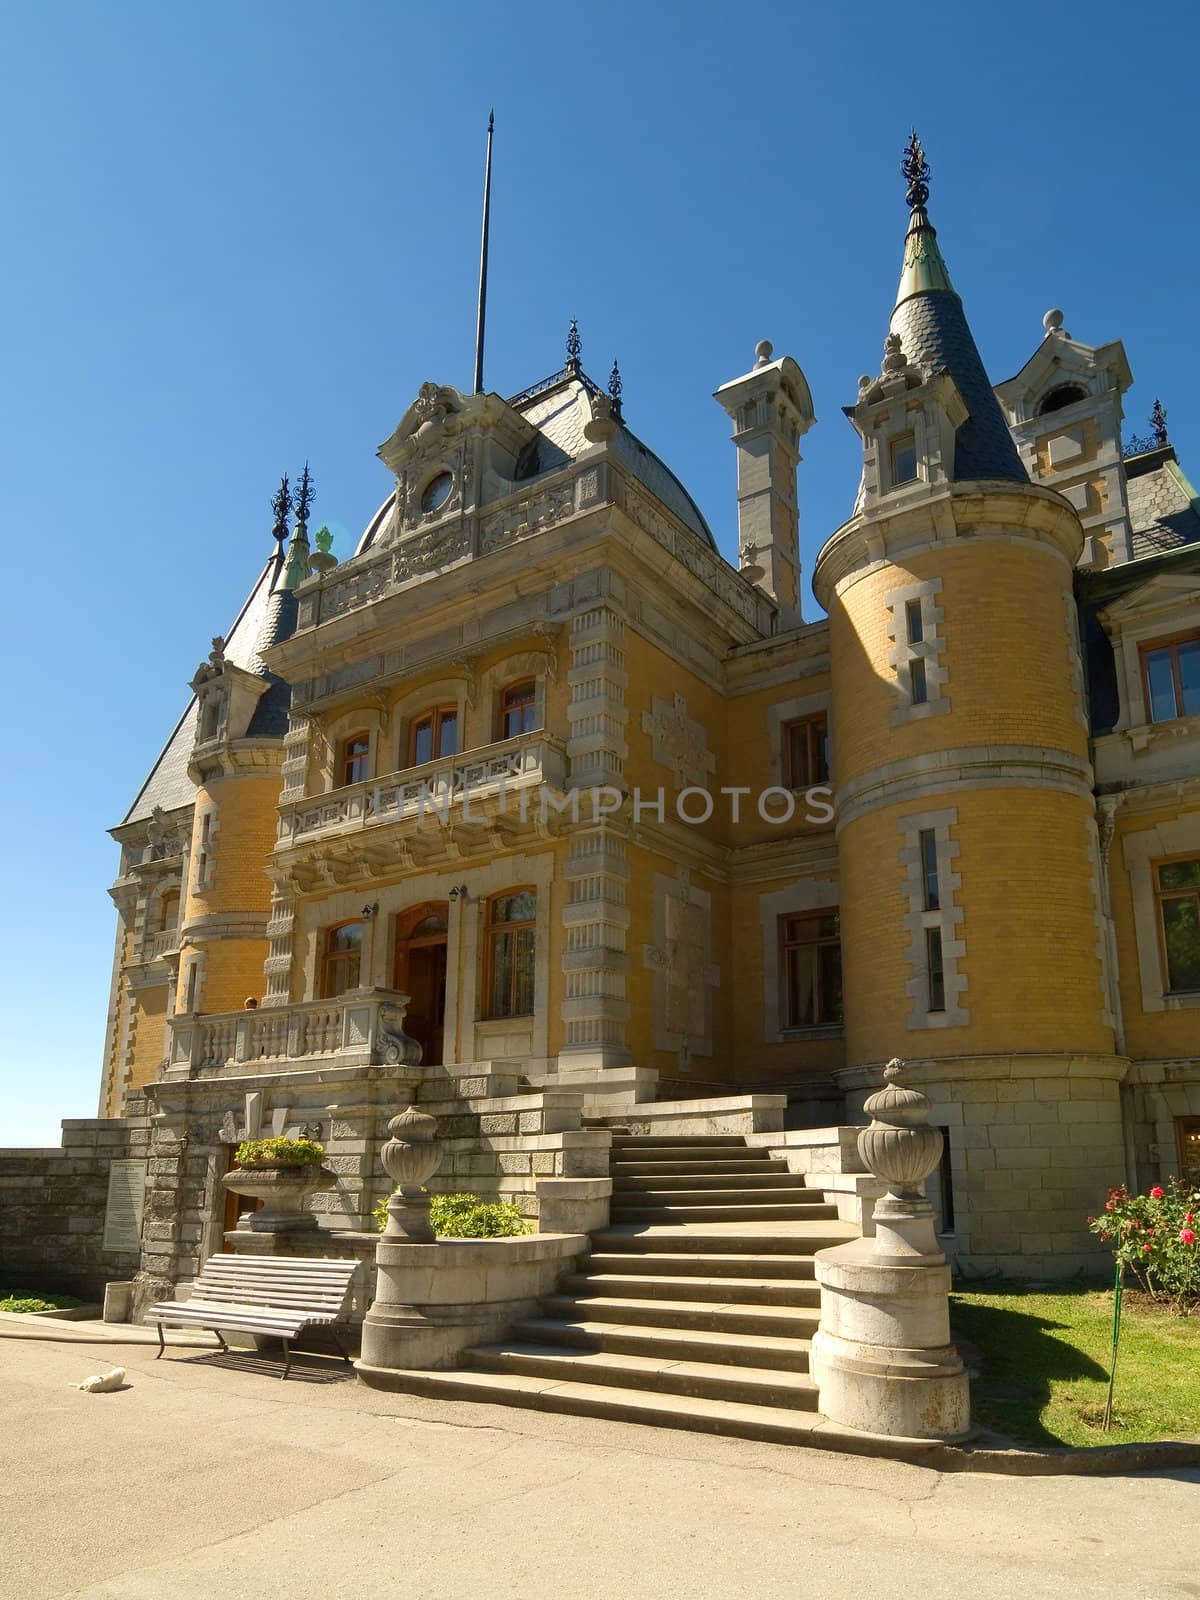 Massandra Palace in Yalta, Crimea by kvinoz